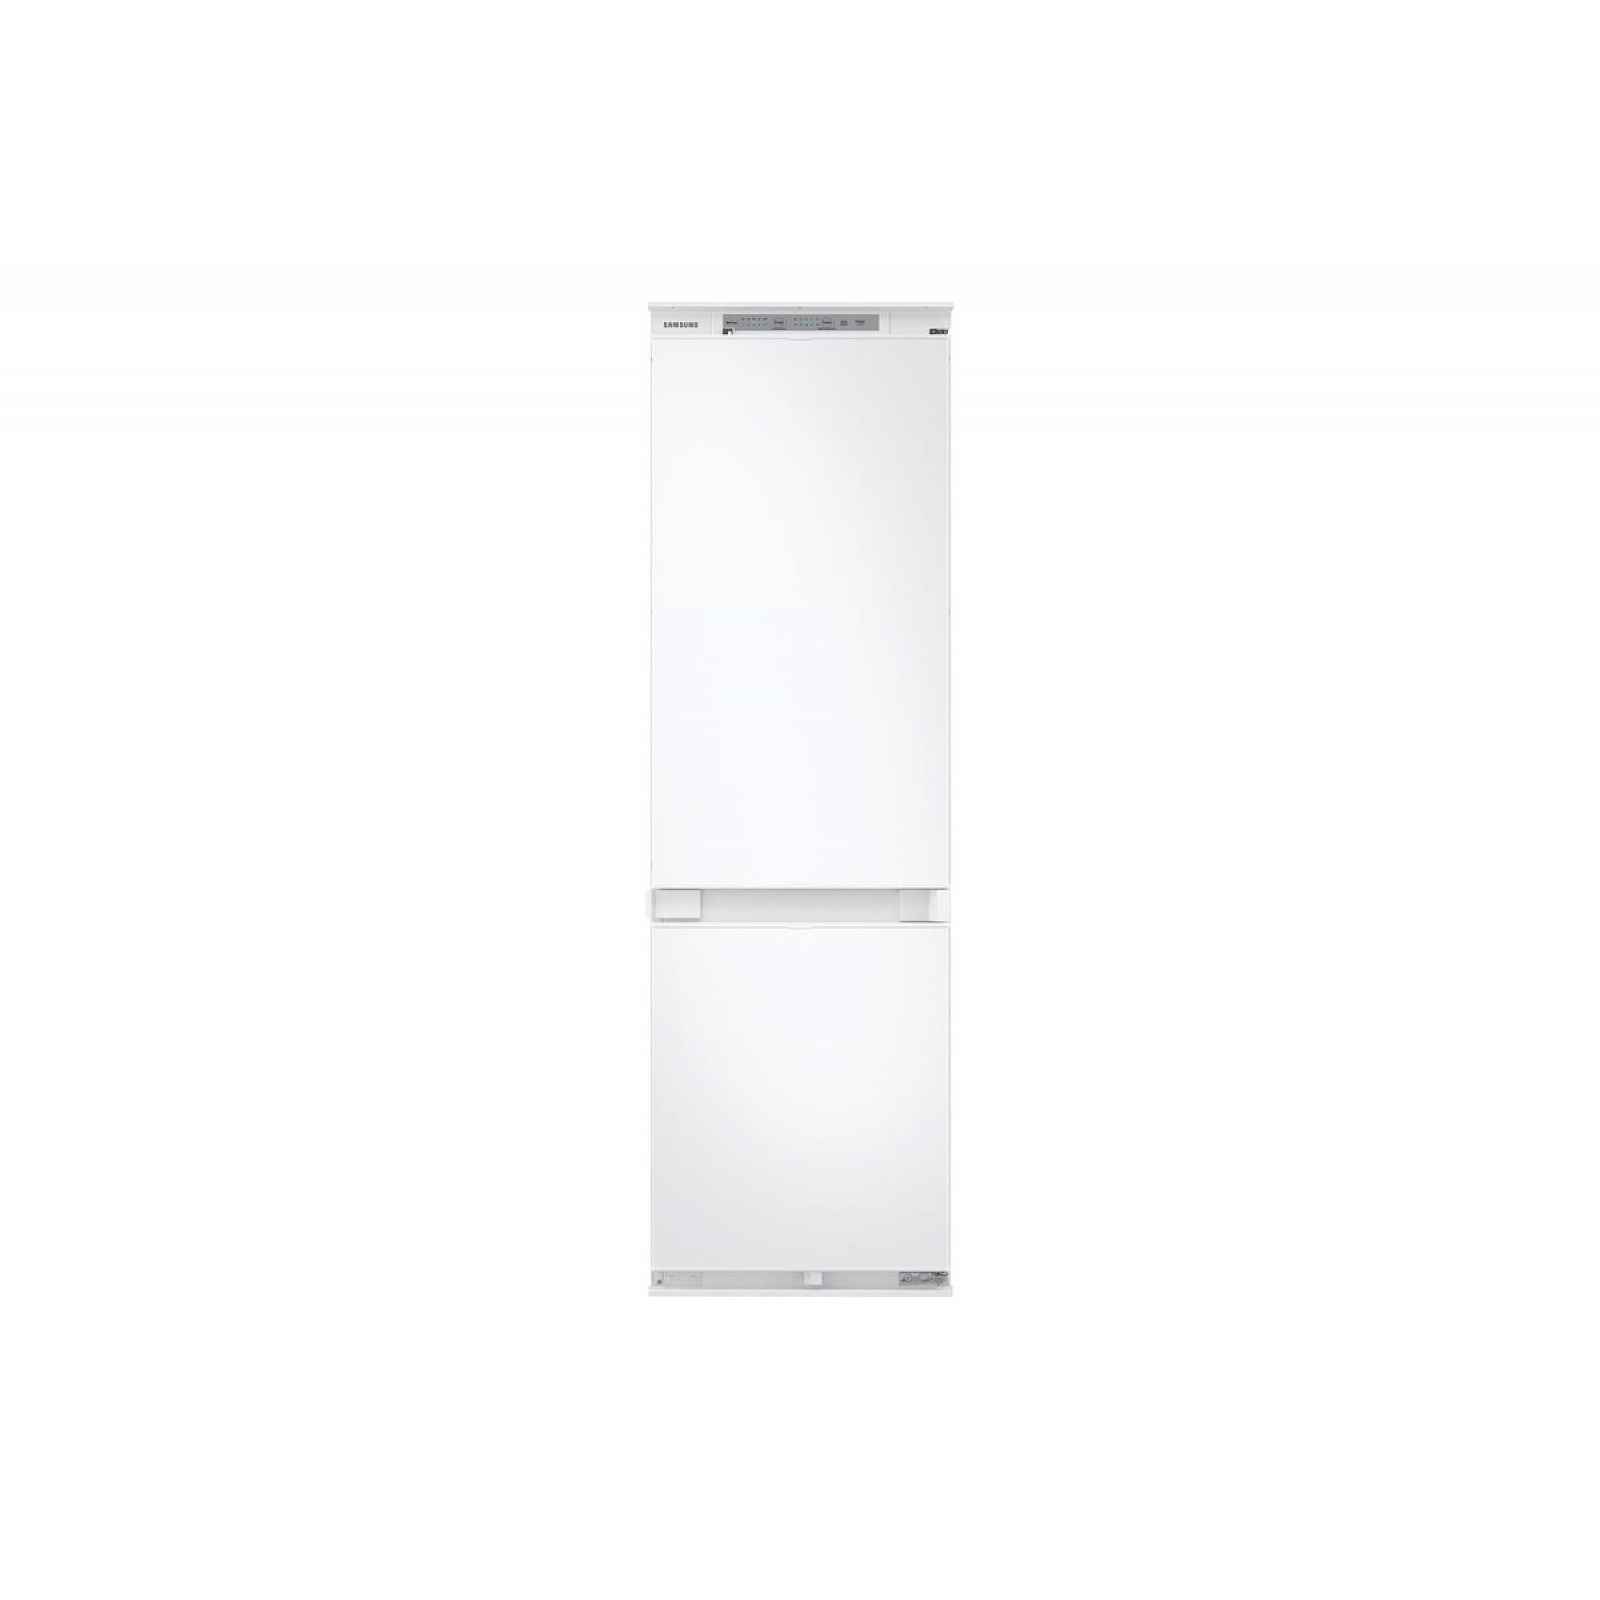 Vestavná kombinovaná chladnička Samsung BRB26705DWW/EF